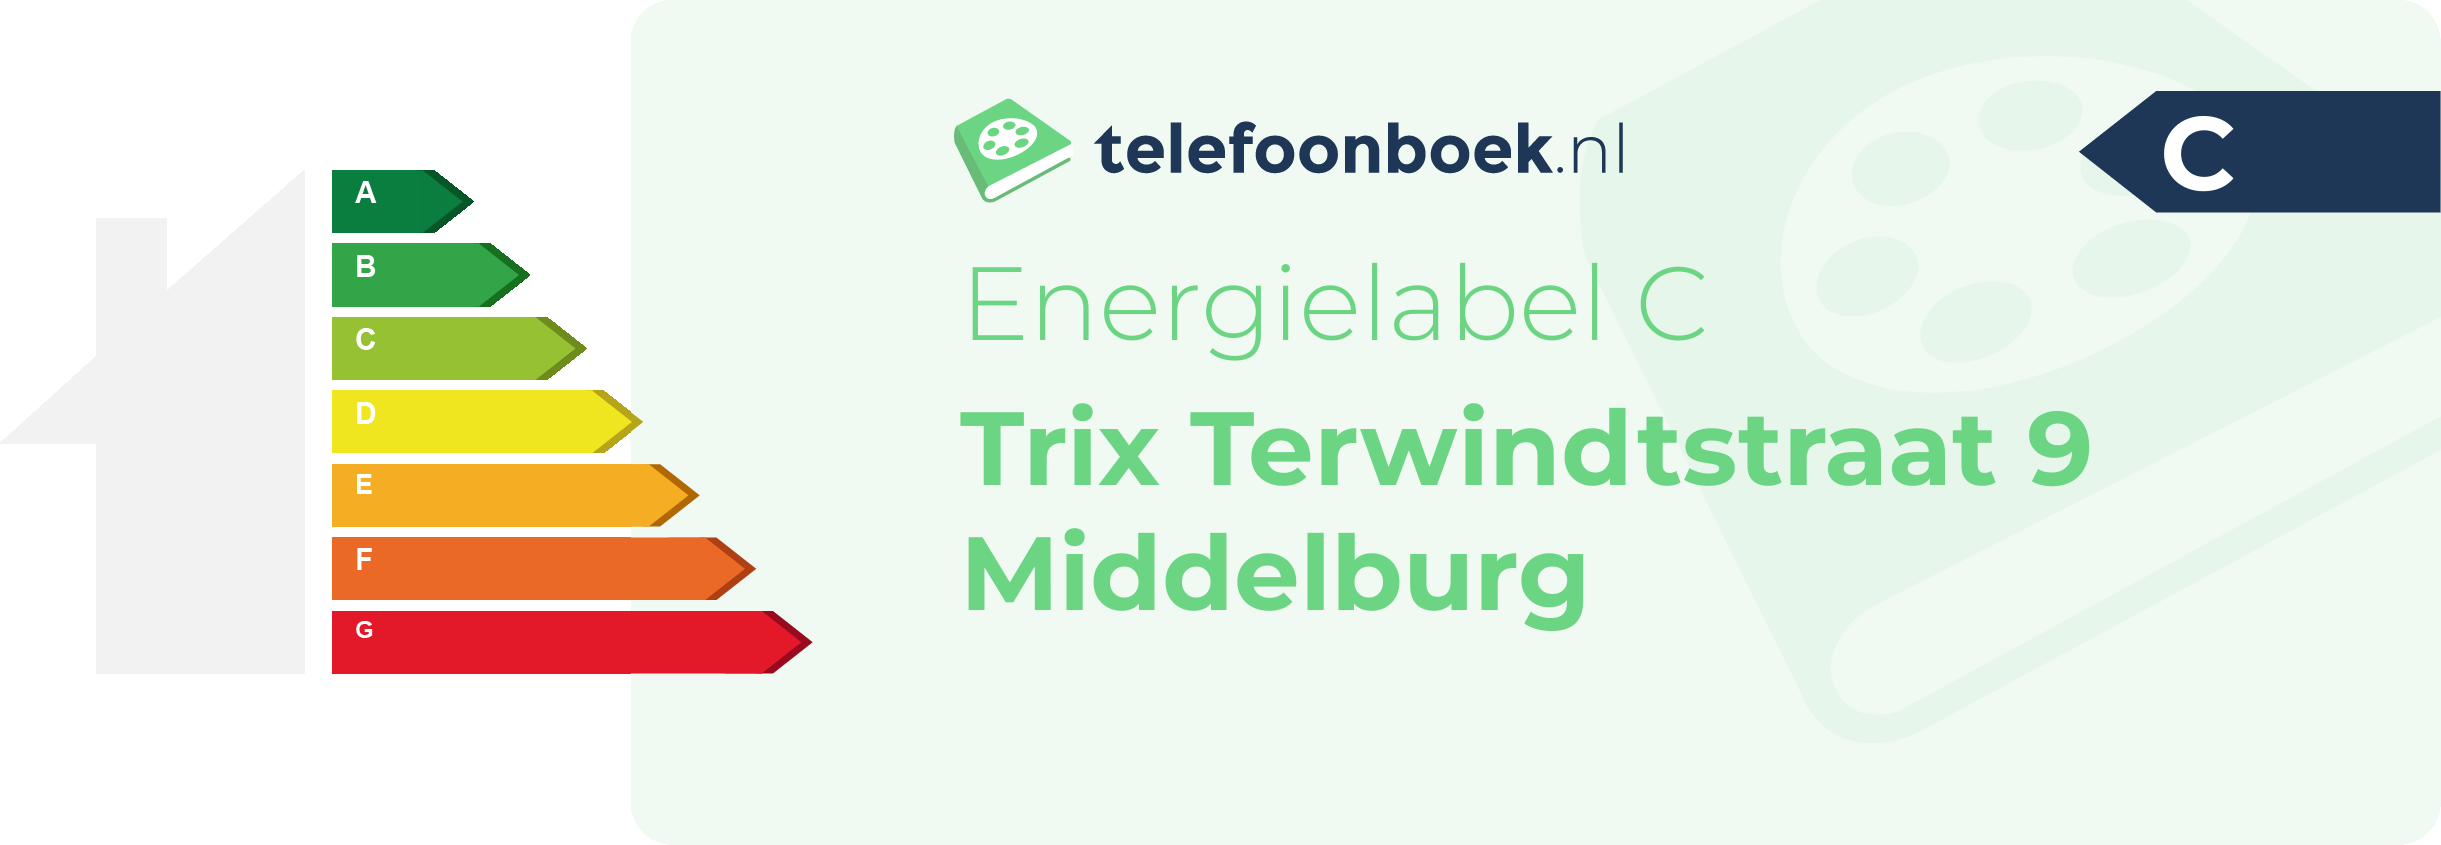 Energielabel Trix Terwindtstraat 9 Middelburg